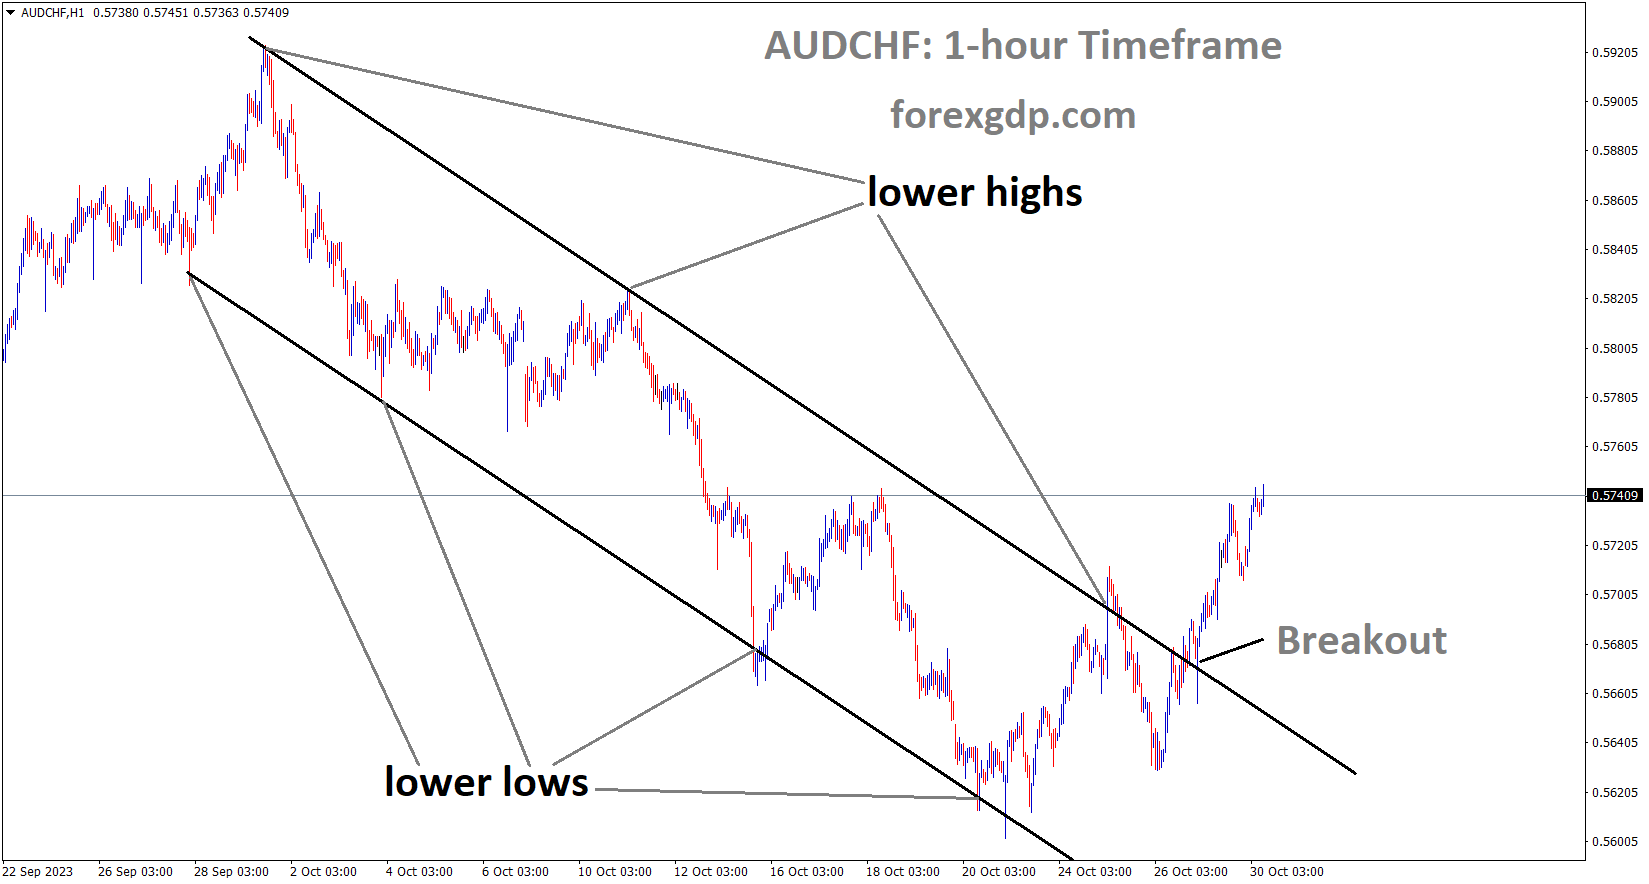 AUDCHF has broken the Descending channel in upside